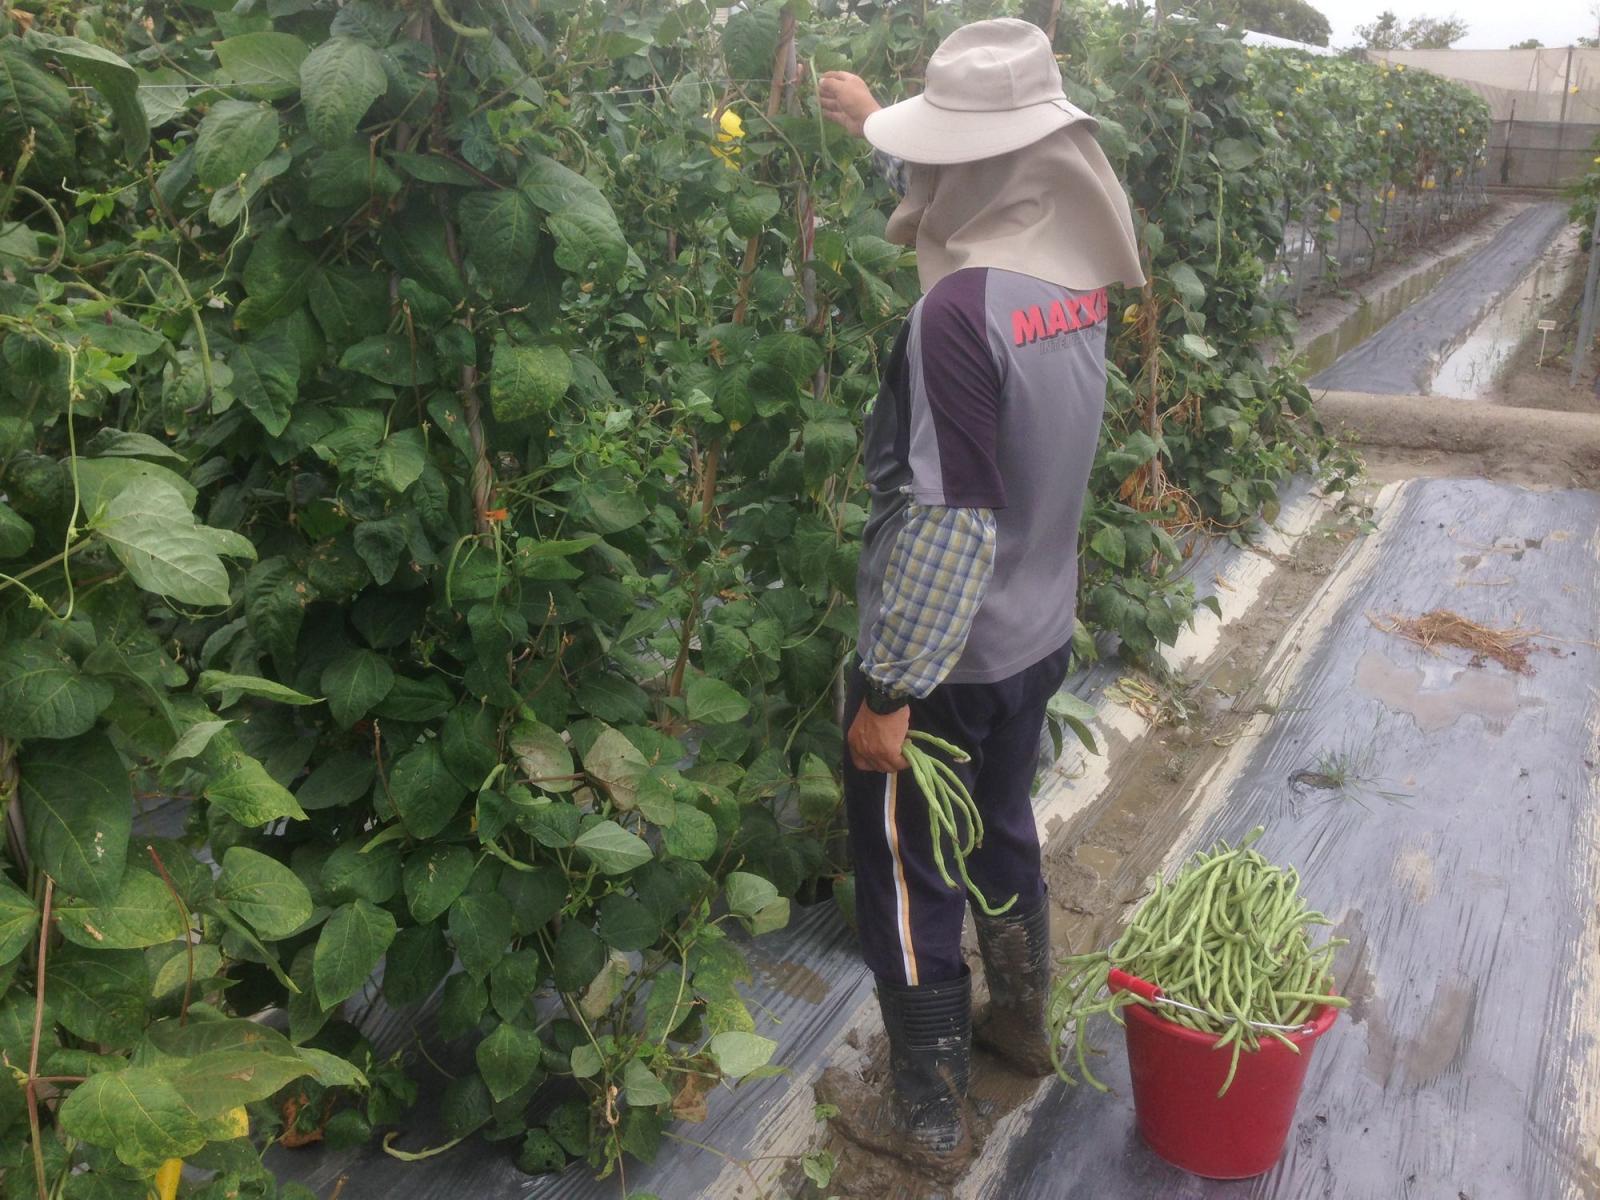 達採收適期之蔬菜應於豪大雨來臨前儘速搶收以降低損失。